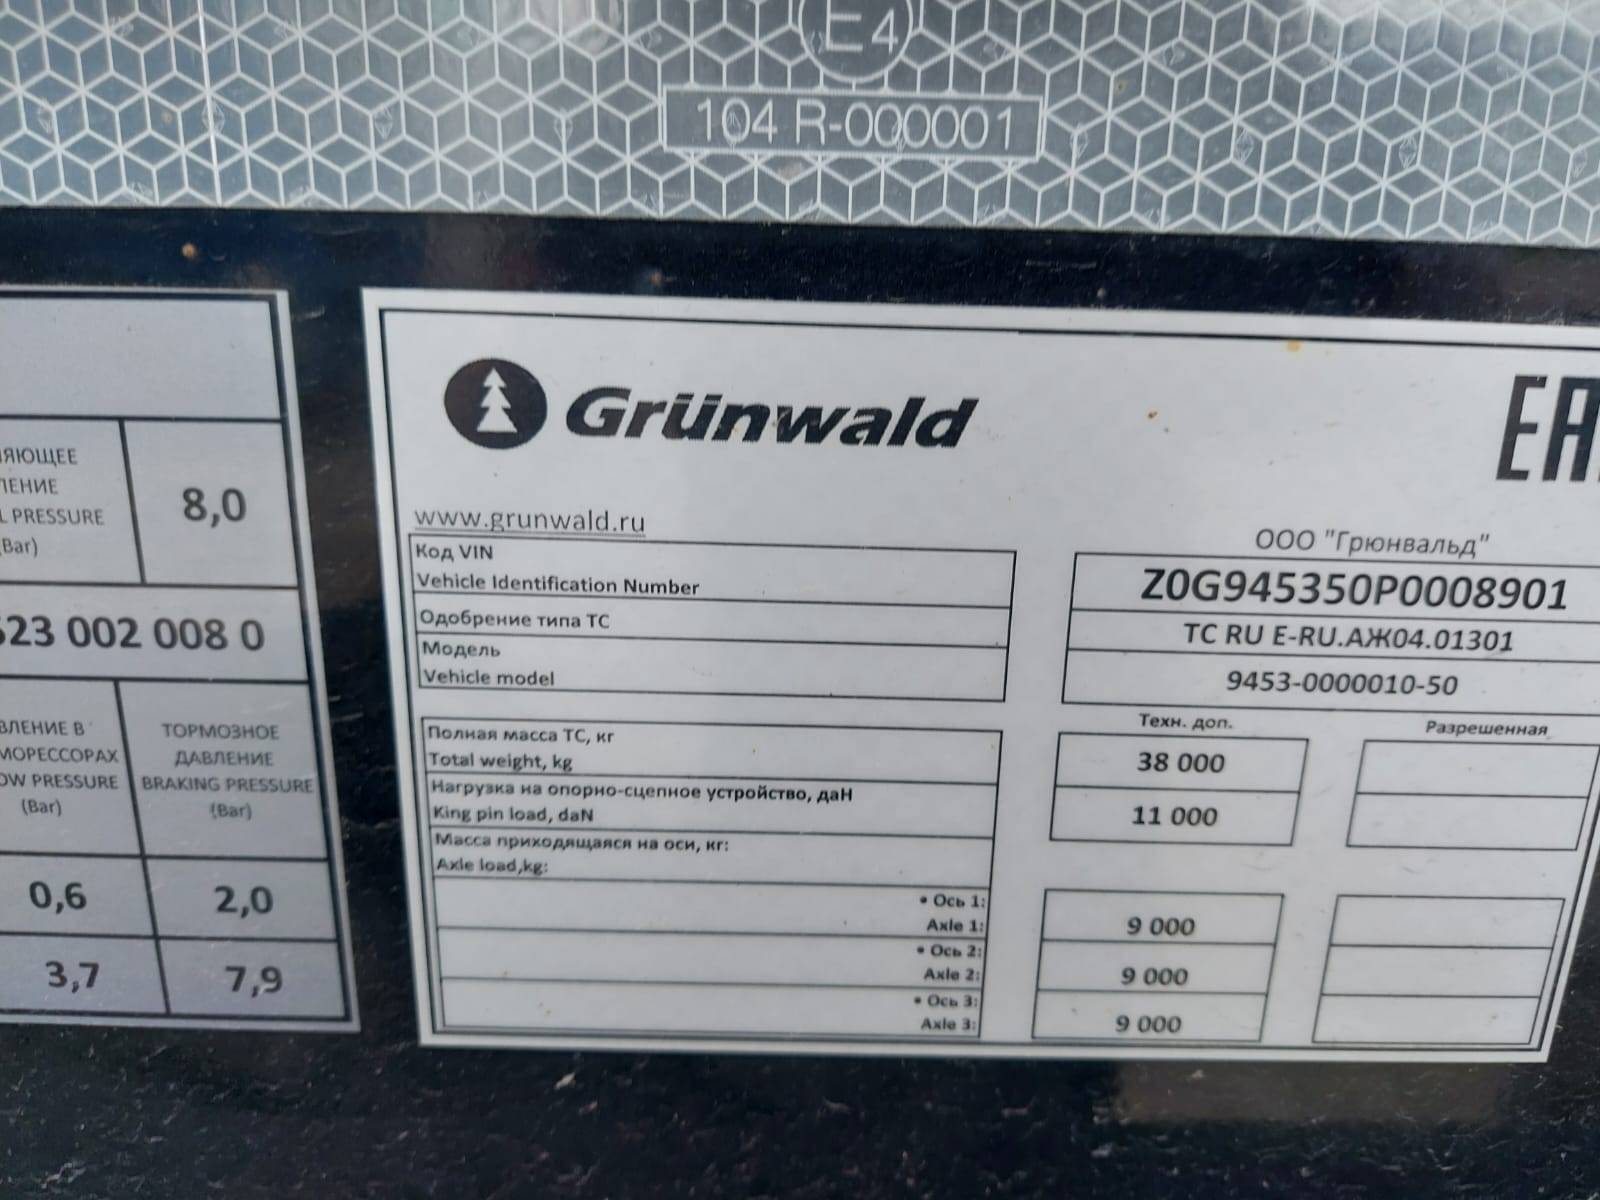 Grunwald Самосвальный TSt 34 (9453-0000010-50) Лот 000002521